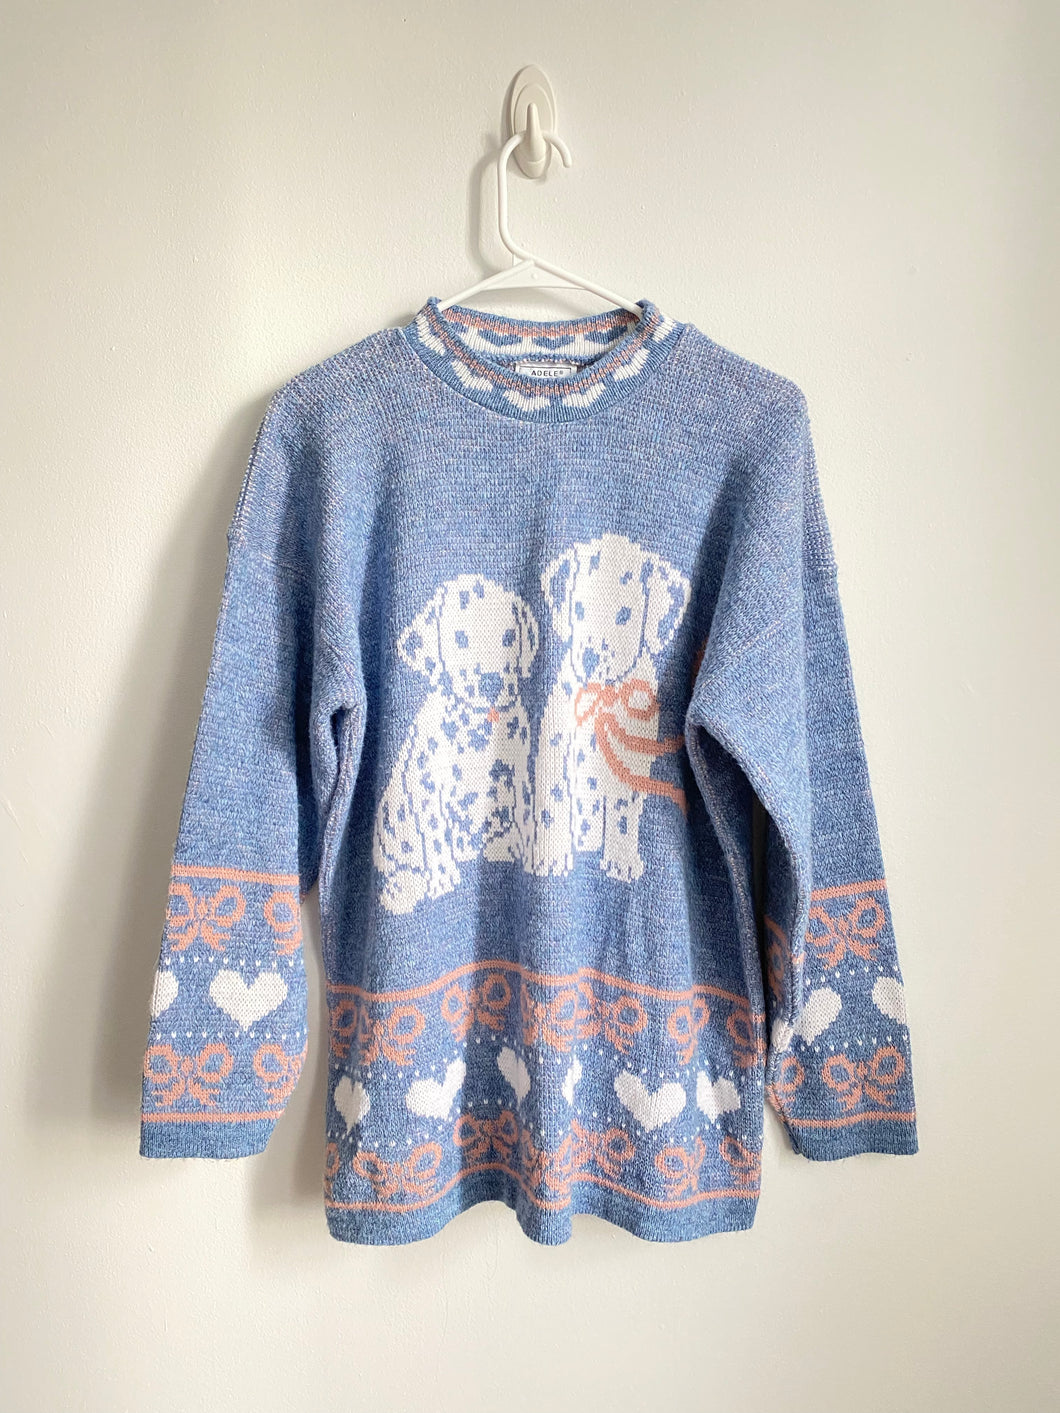 80s Dalmatian knit